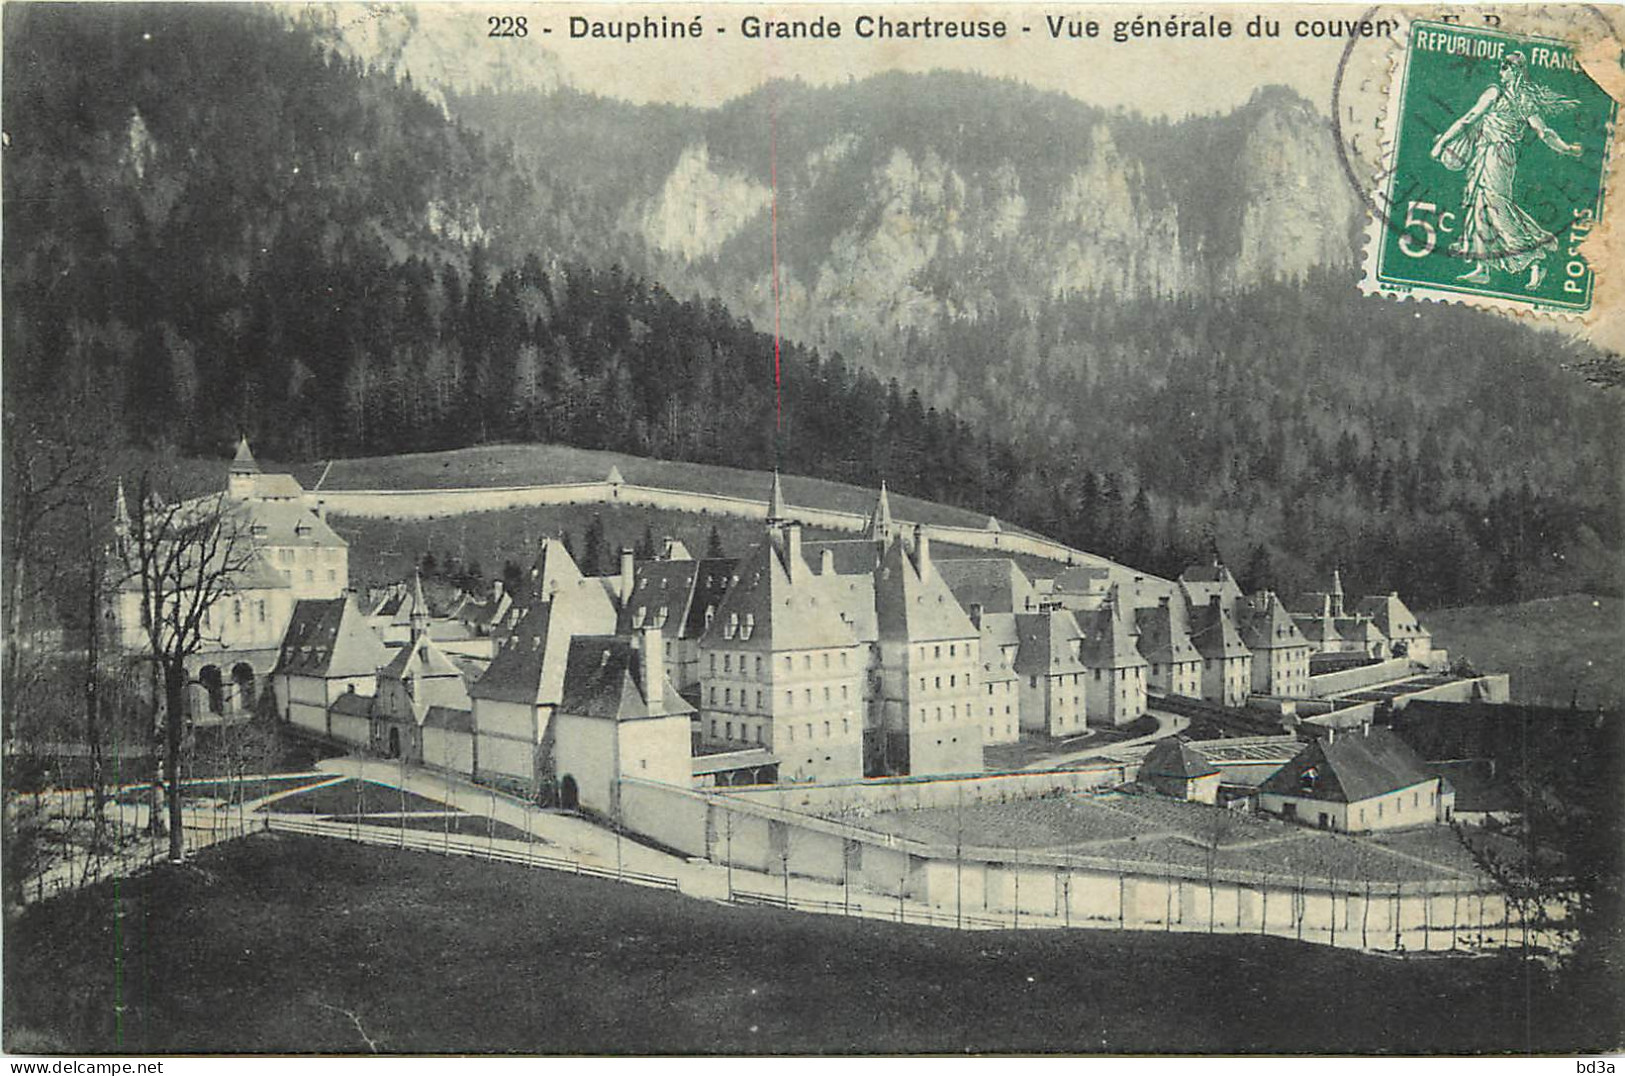   38 -  GRANDE CHARTREUSE - VUE GENERALE DU COUVENT - Chartreuse